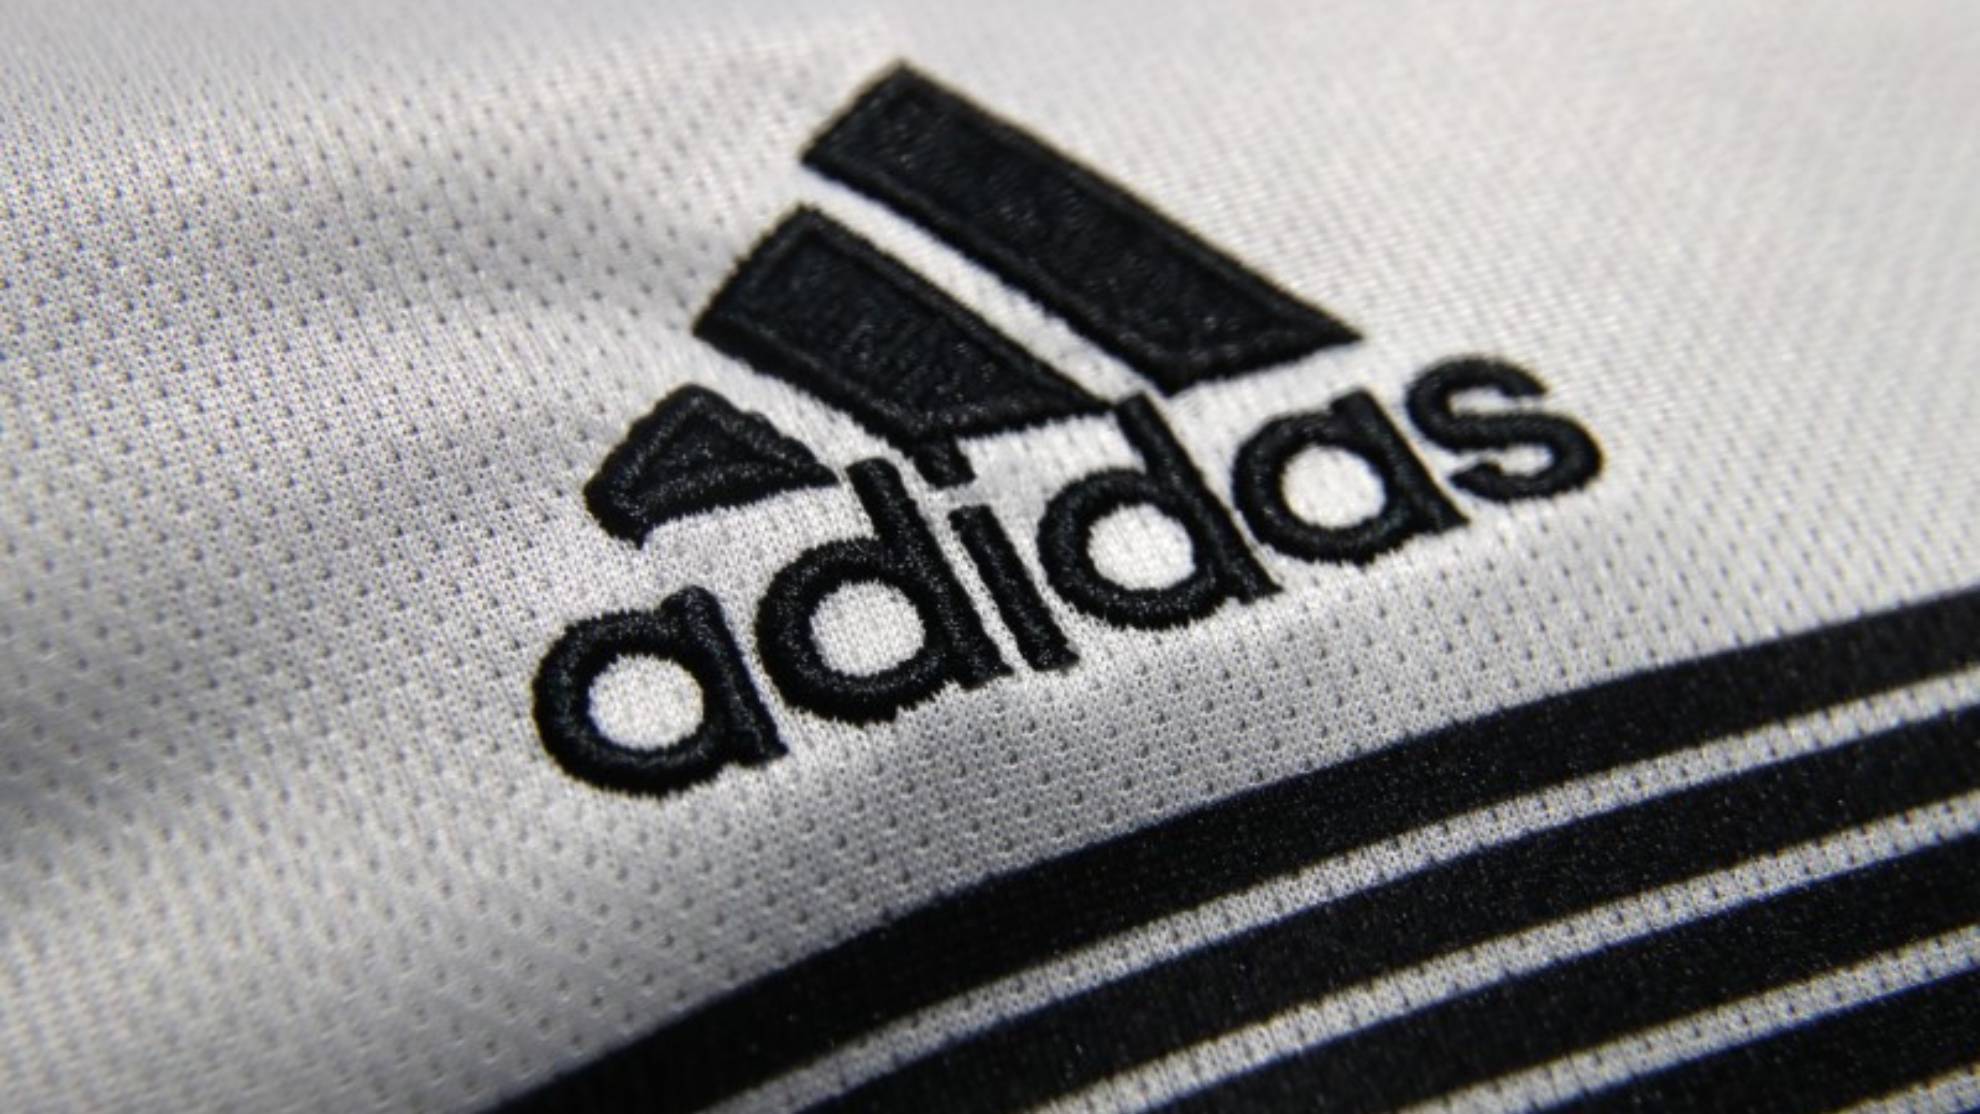 Nube ego Decrépito Por qué Adidas se llama así? Historia y origen de la marca | Marca